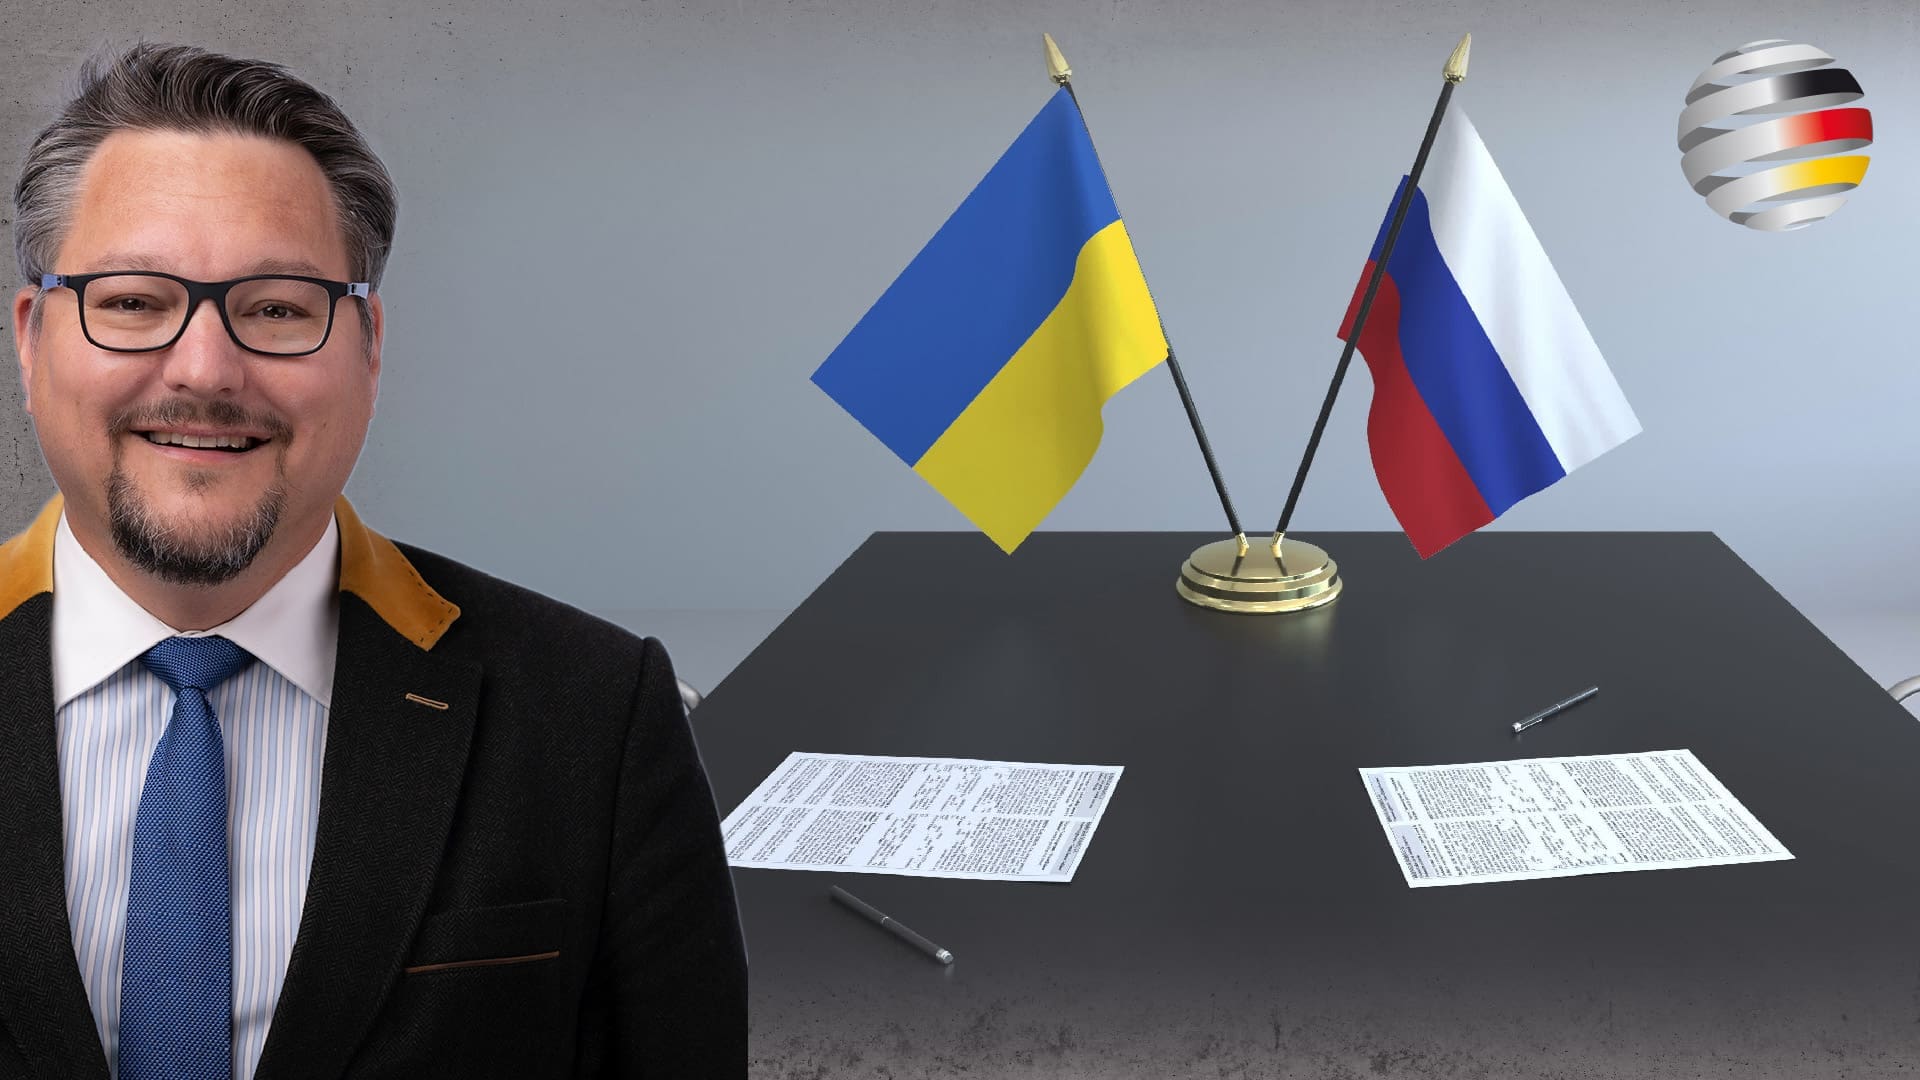 ukraine-konflikt-muss-diplomatisch-geloest-werden!-|-ein-kommentar-des-afd-bundestagsabgeordneten-stefan-keuter